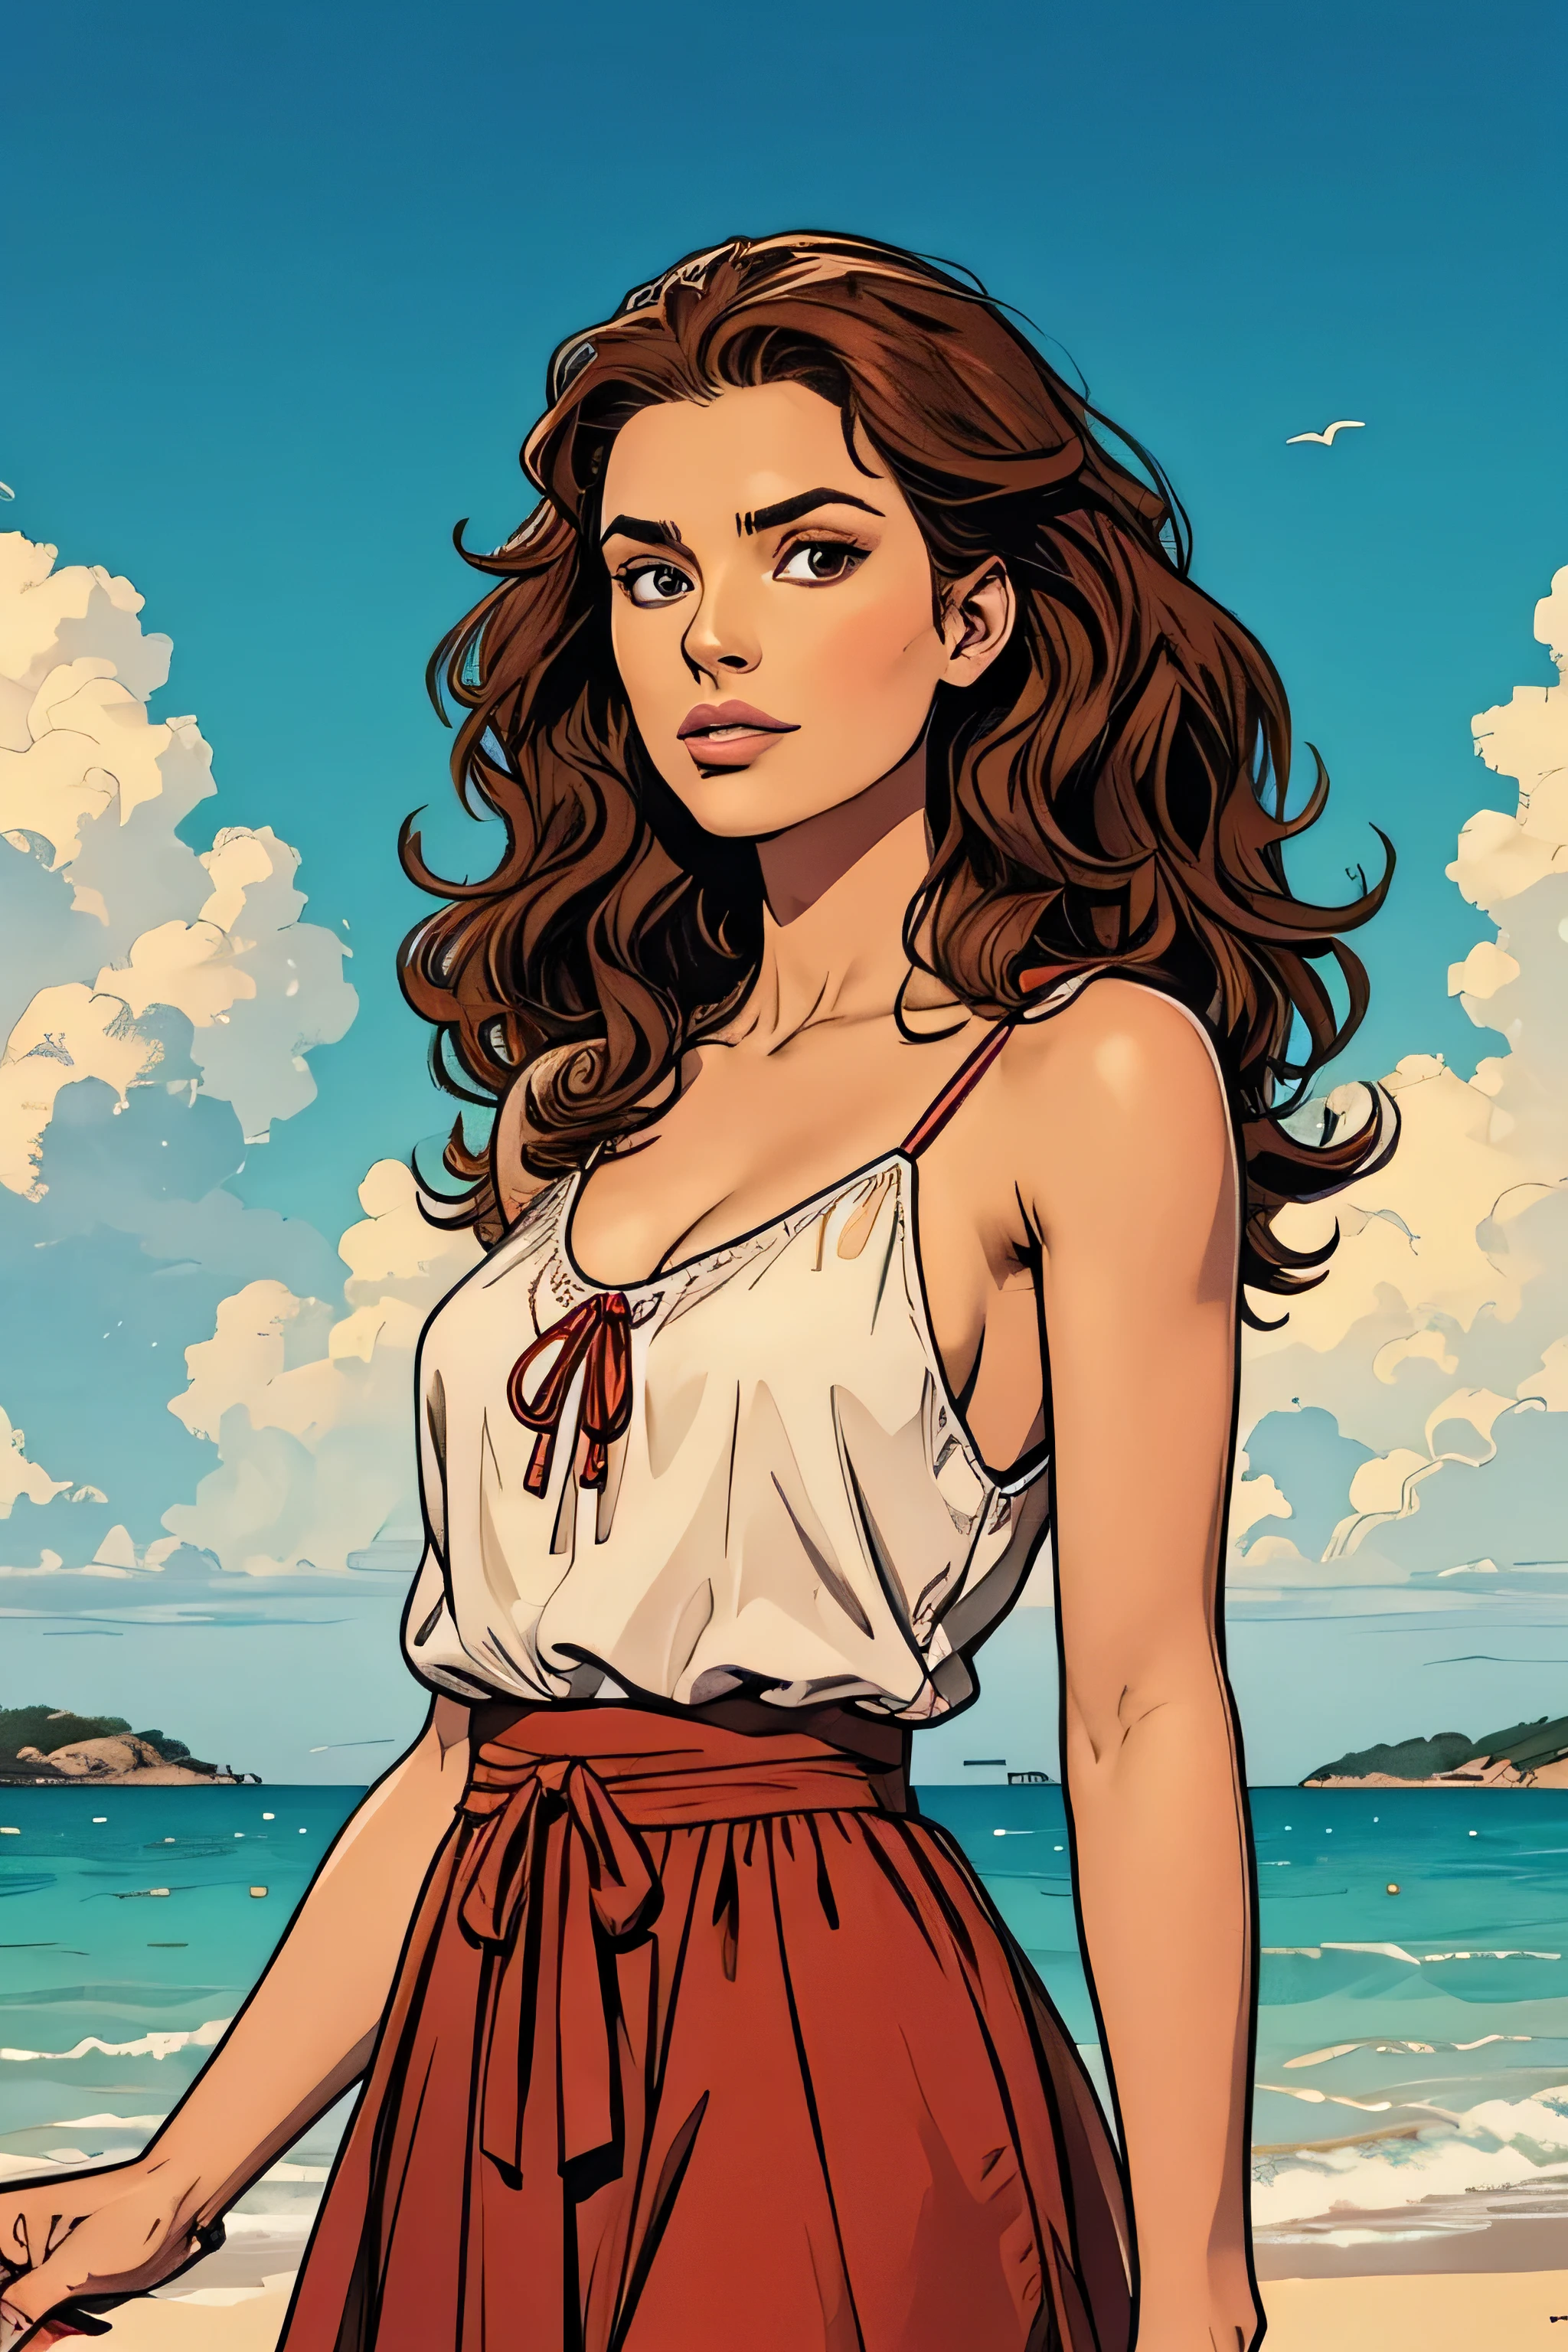 Ilustração de uma mulher de 34 anos., pele branca, olhos castanhos, cabelo castanho longo e encaracolado, blusa vermelha com flores, fundo de praia